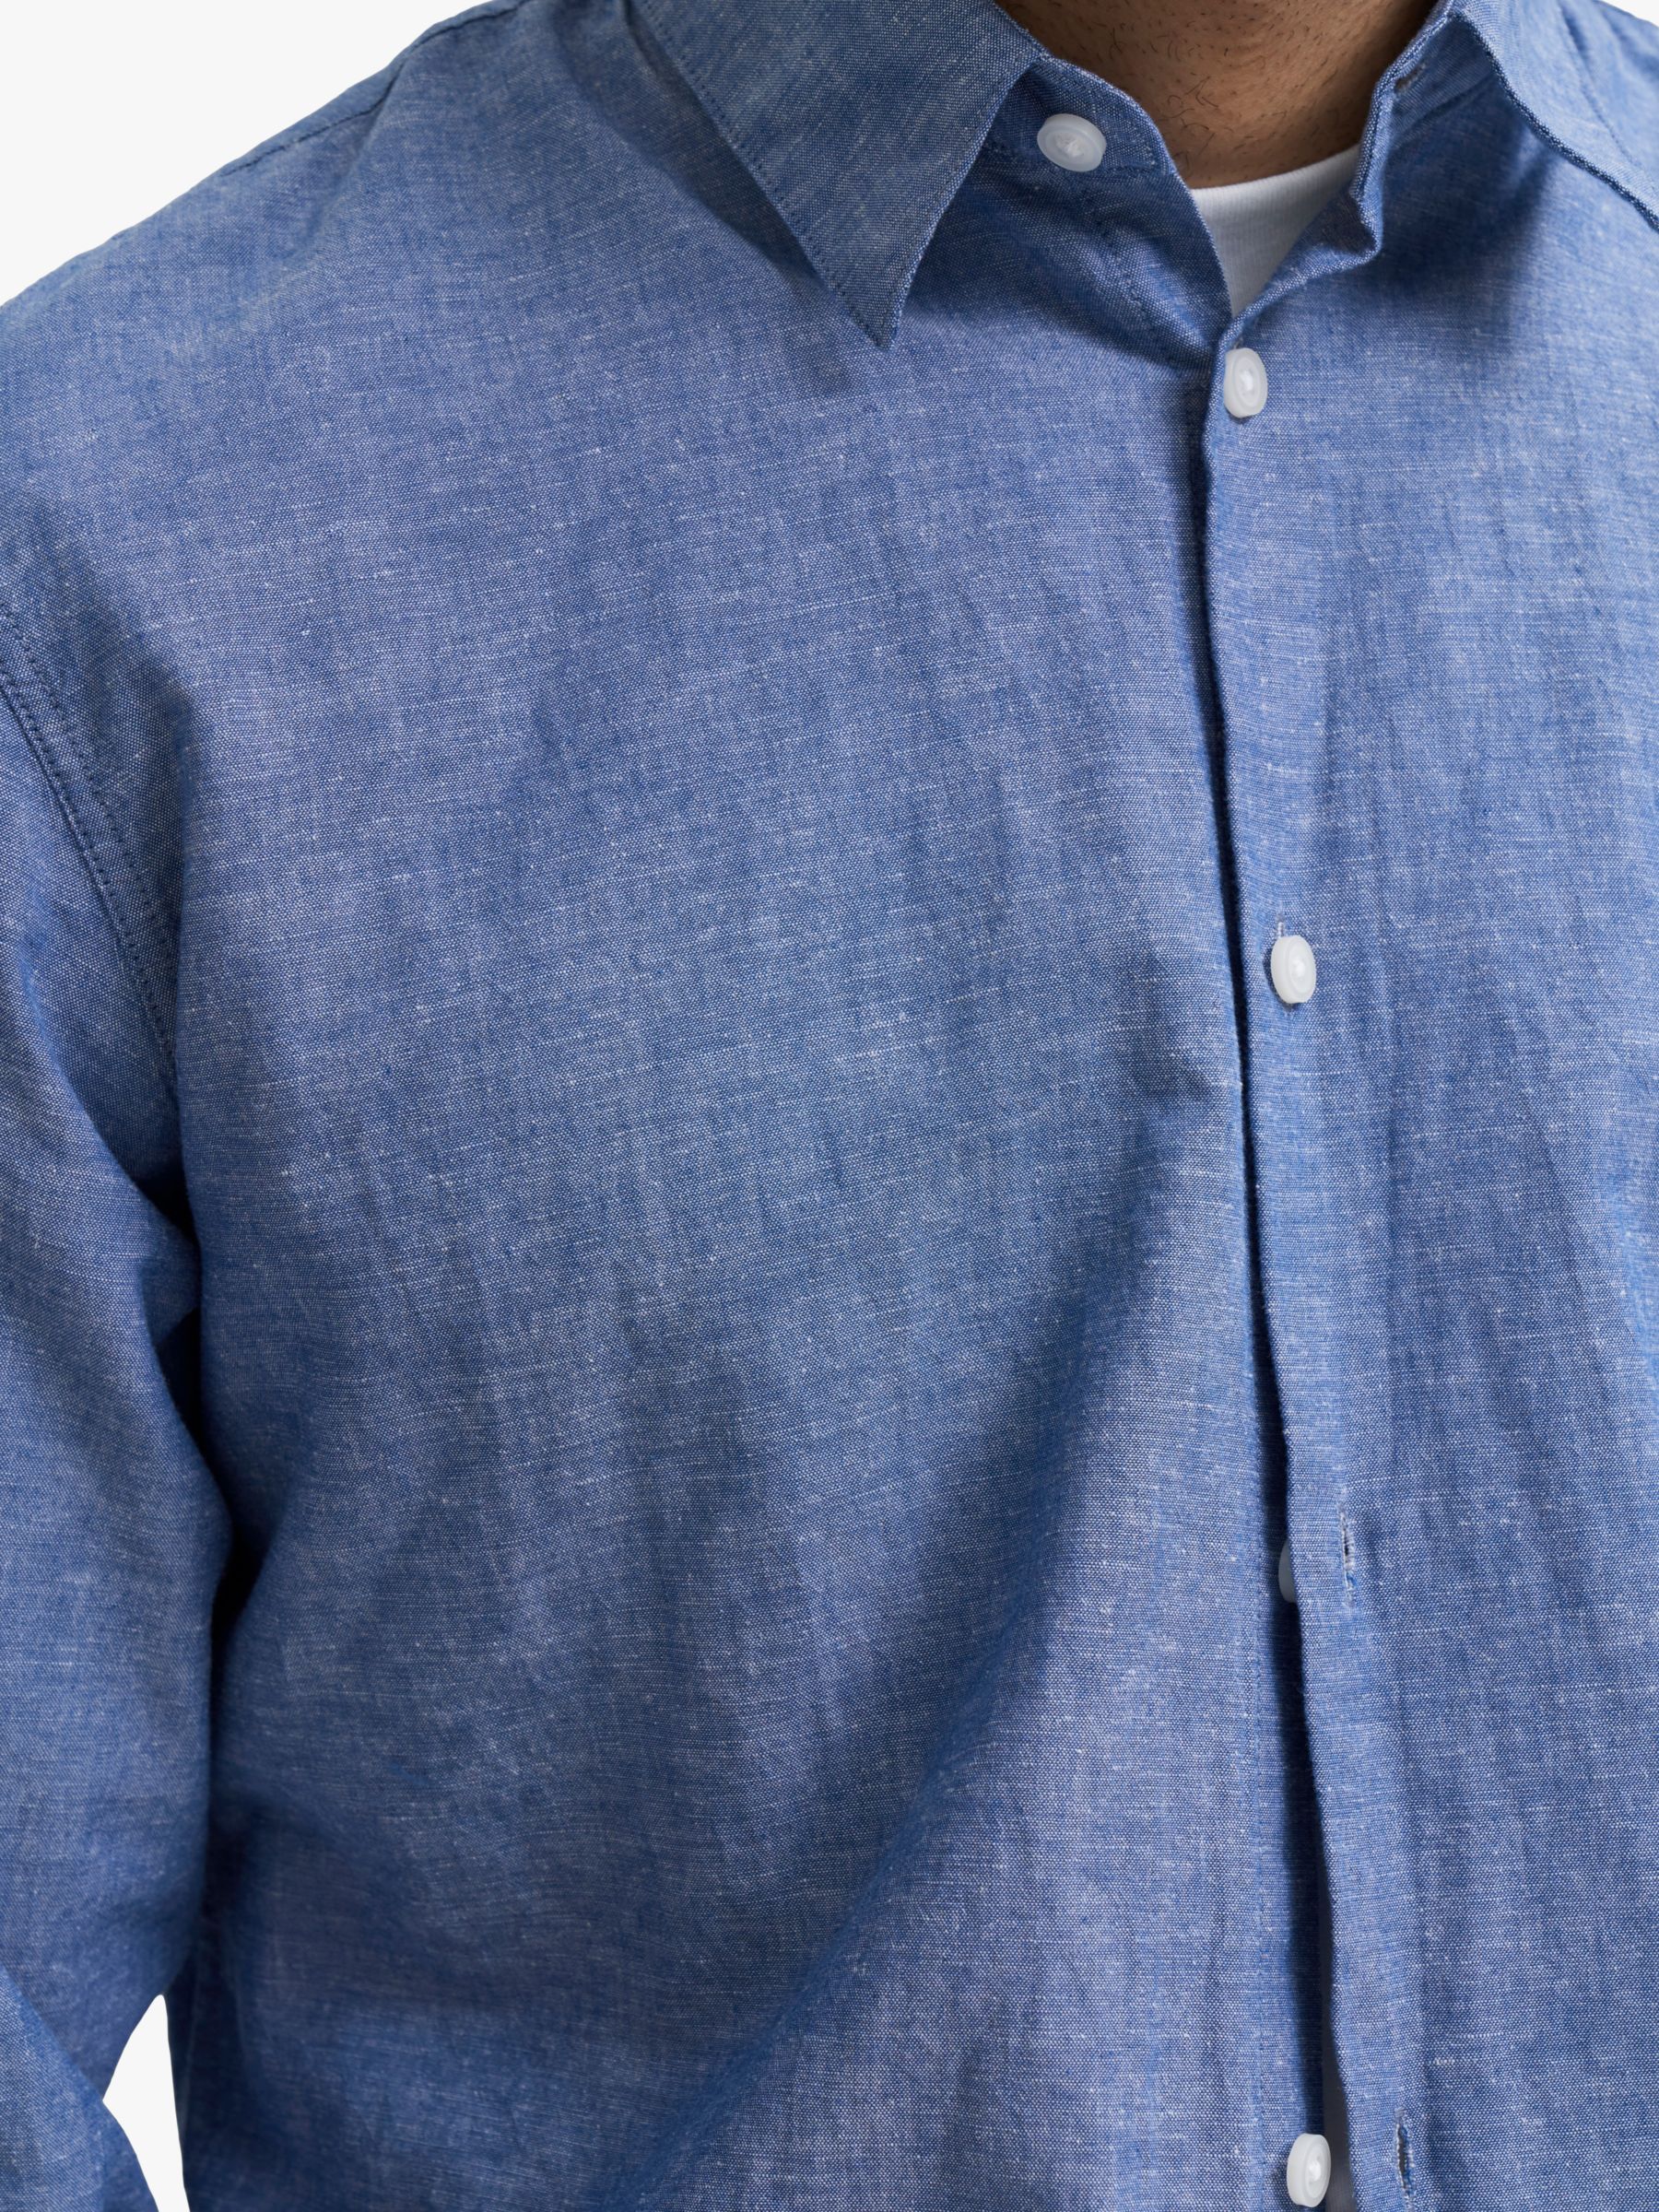 SELECTED HOMME Cotton Linen Blend Shirt, Medium Blue Denim, S